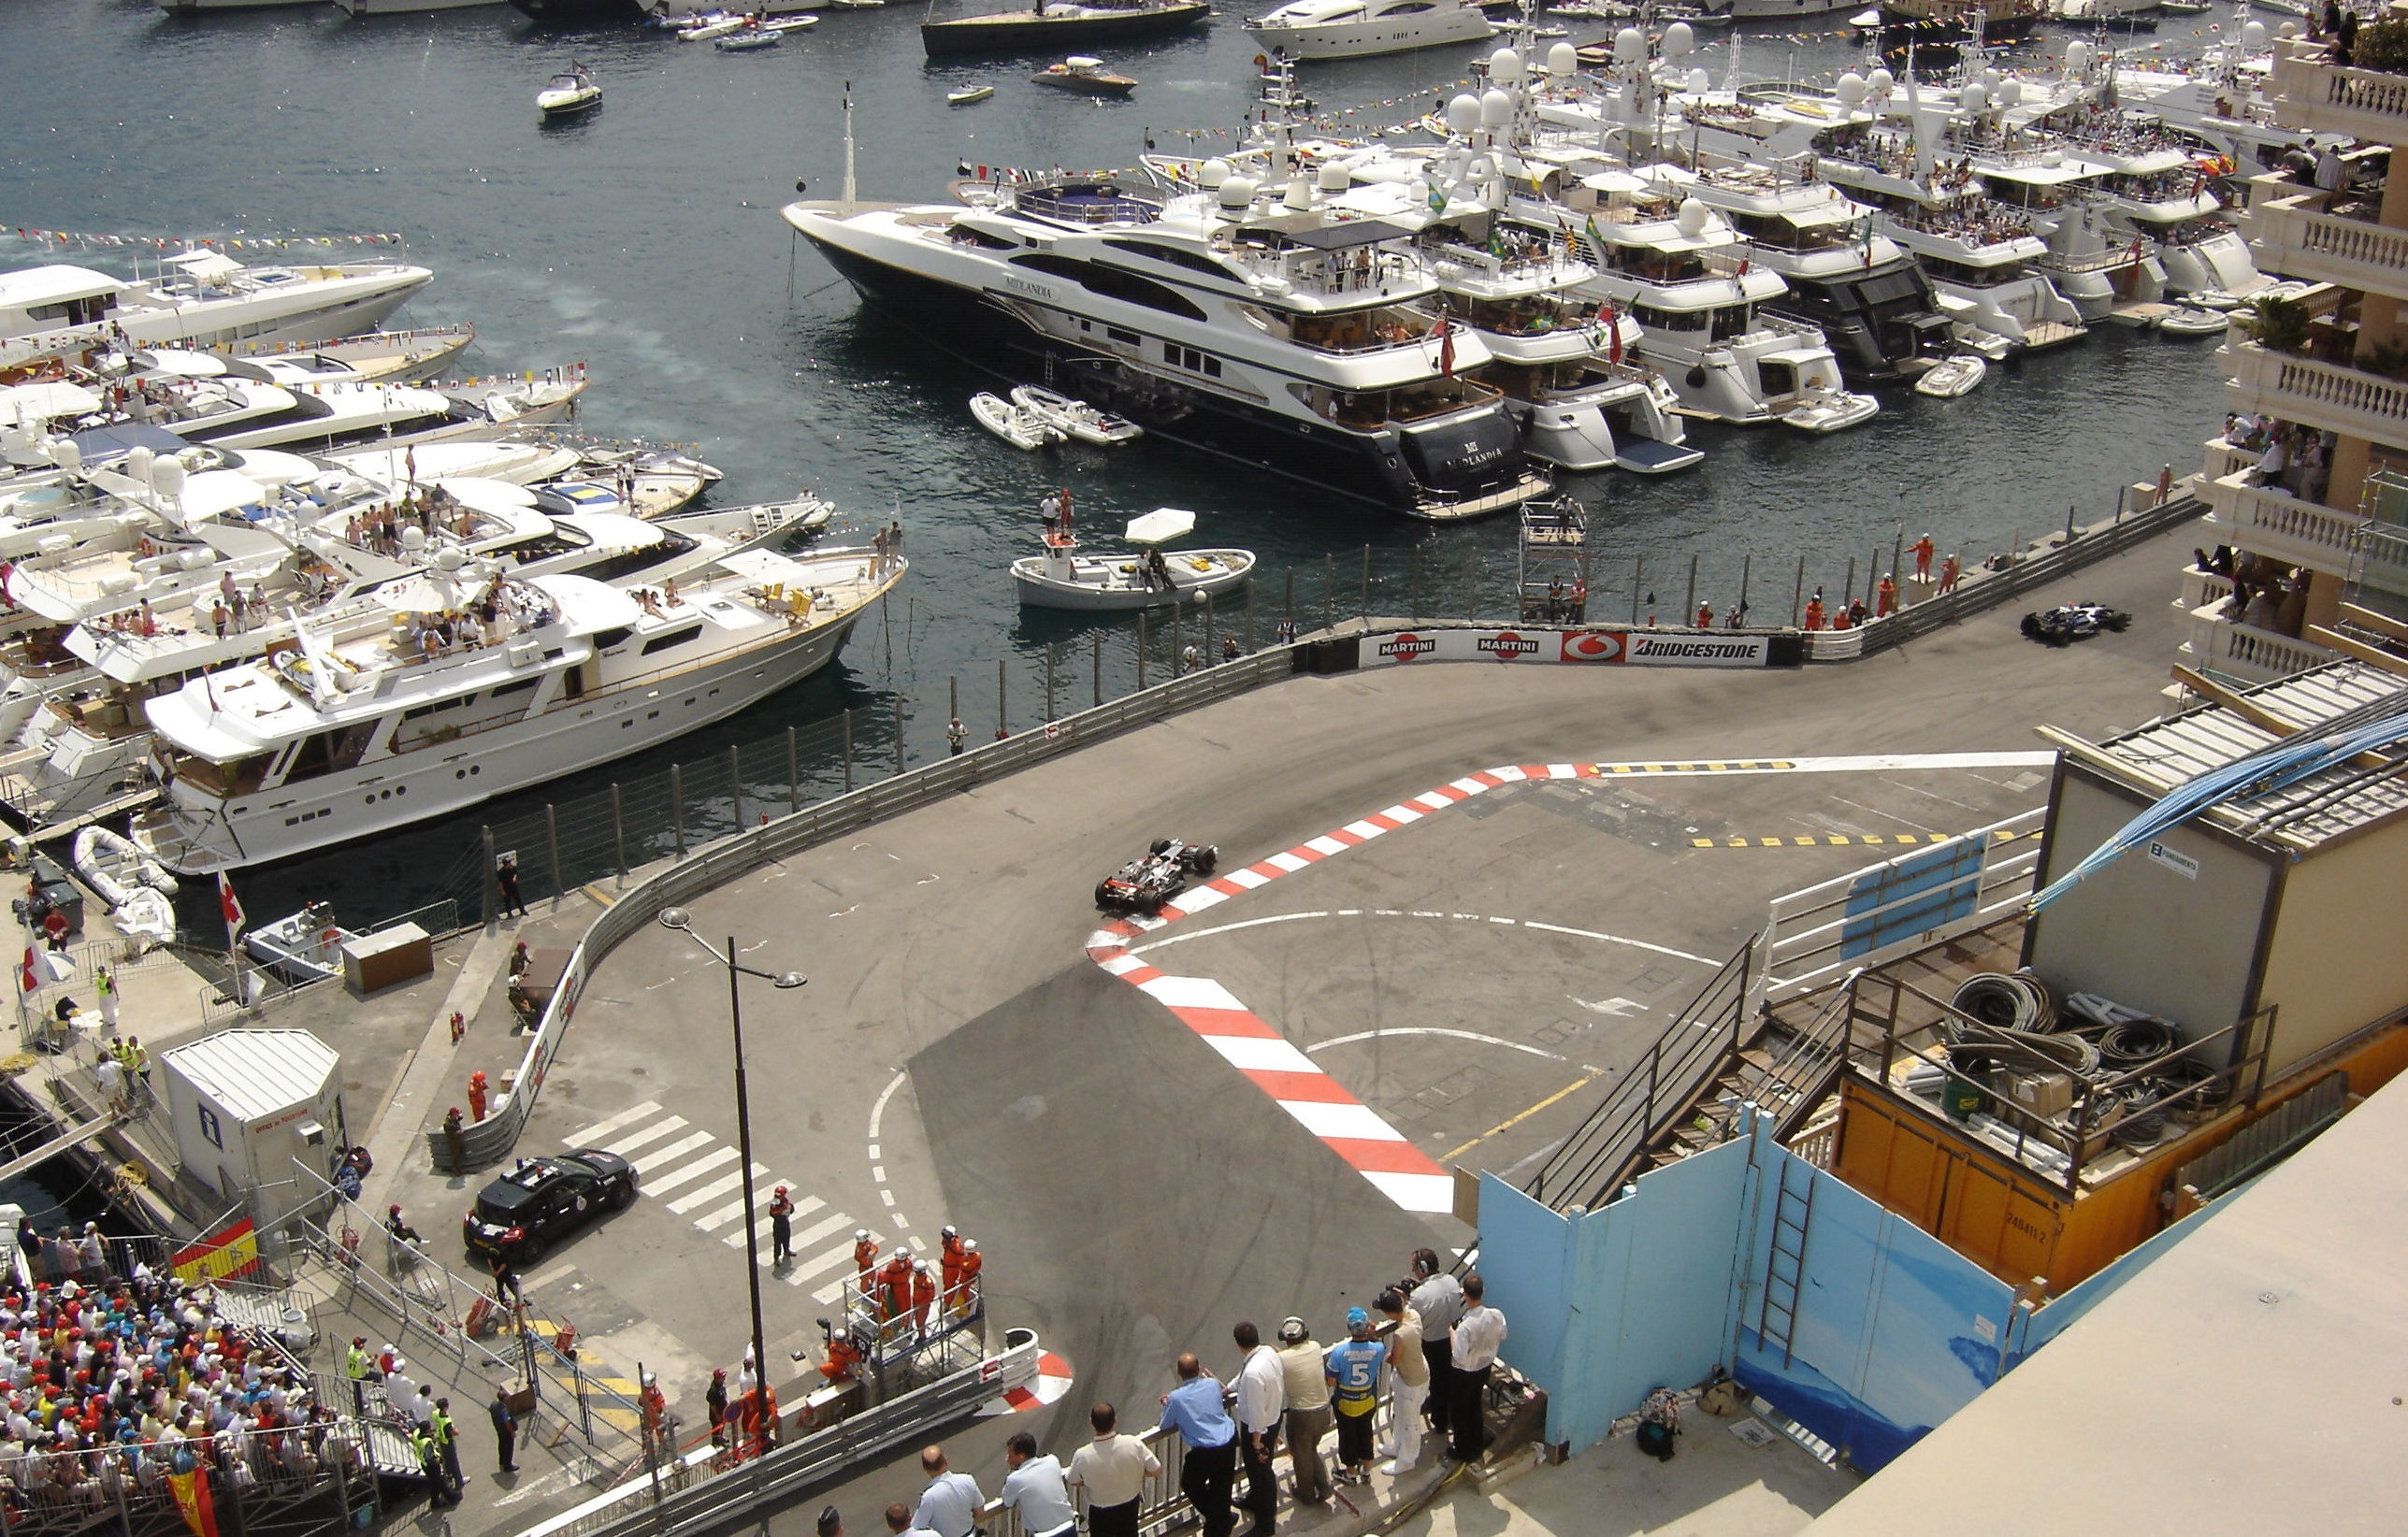 Crystal Cruises fährt mit der Crystal Serenity zum Formel 1-Rennen nach Monaco, die Kreuzfahrt geht vom 23. bis 29. Mai 2019 ab/bis Barcelona